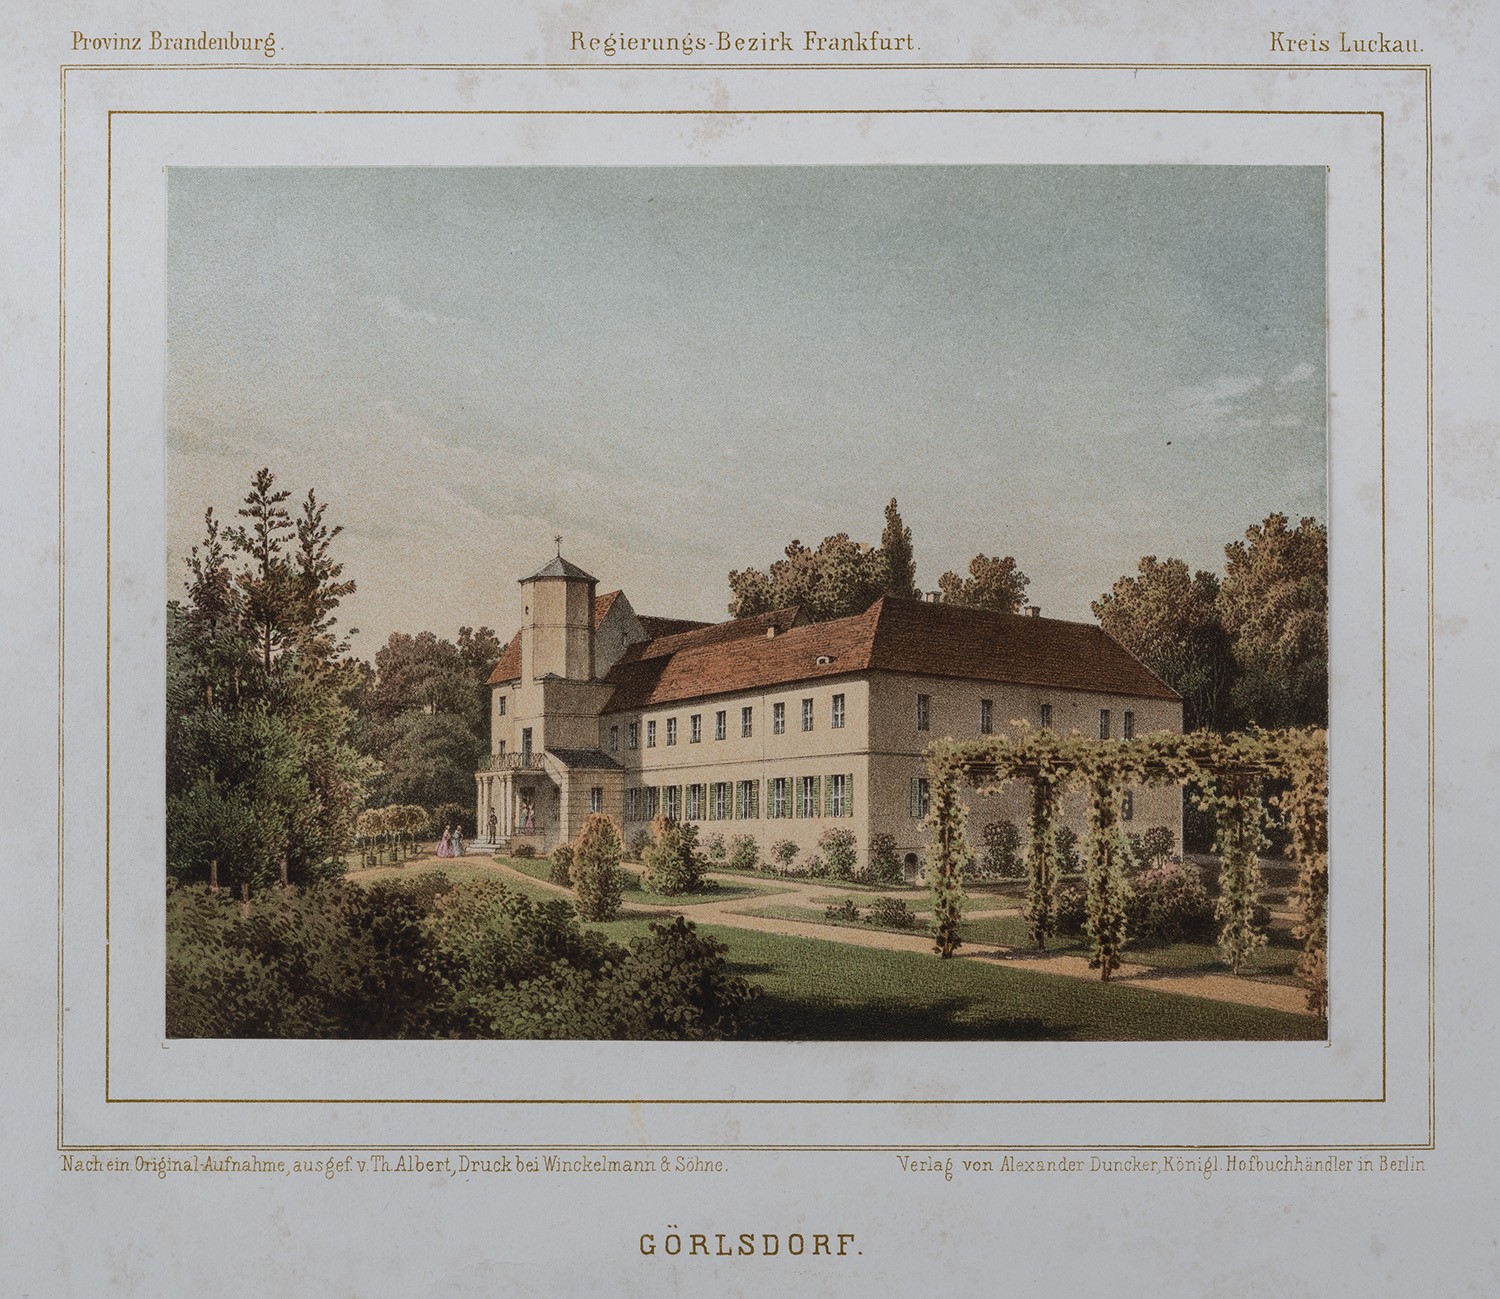 Görlsdorf (Kr. Luckau): Herrenhaus von Nordosten (Landesgeschichtliche Vereinigung für die Mark Brandenburg e.V., Archiv CC BY)